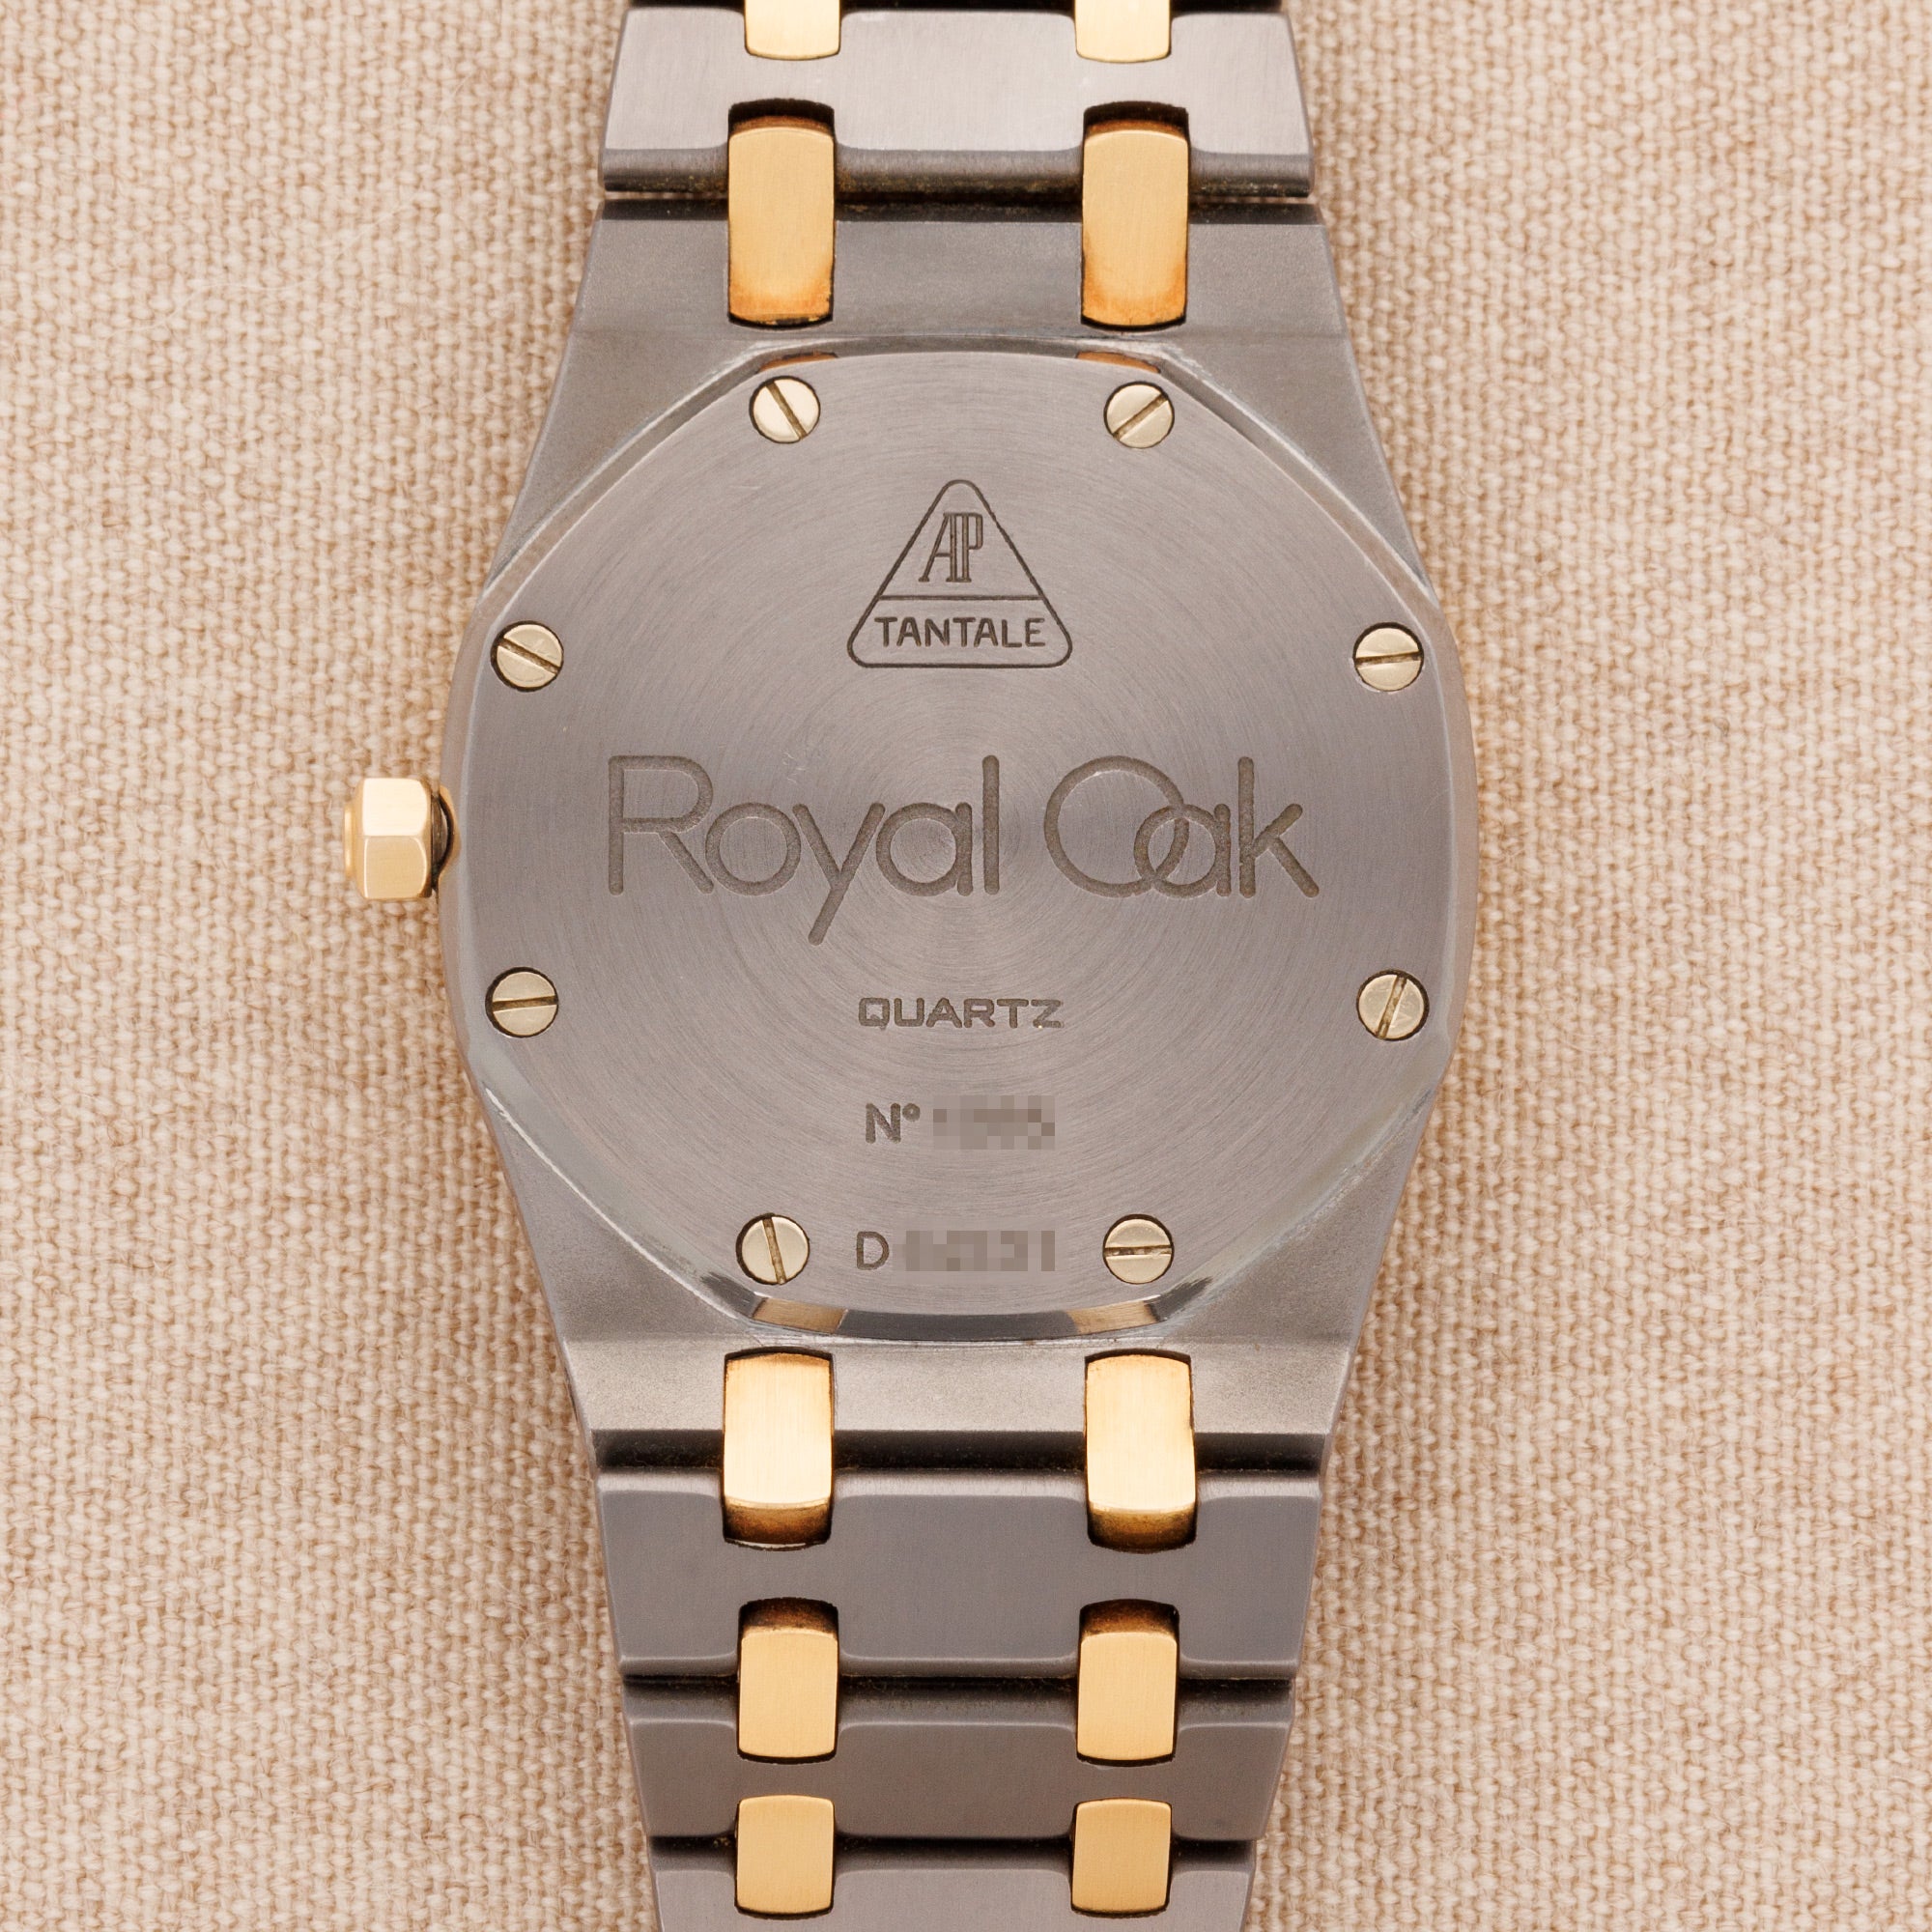 Audemars Piguet - Audemars Piguet Tantalum and Rose Gold Royal Oak Watch Ref. 56175 - The Keystone Watches